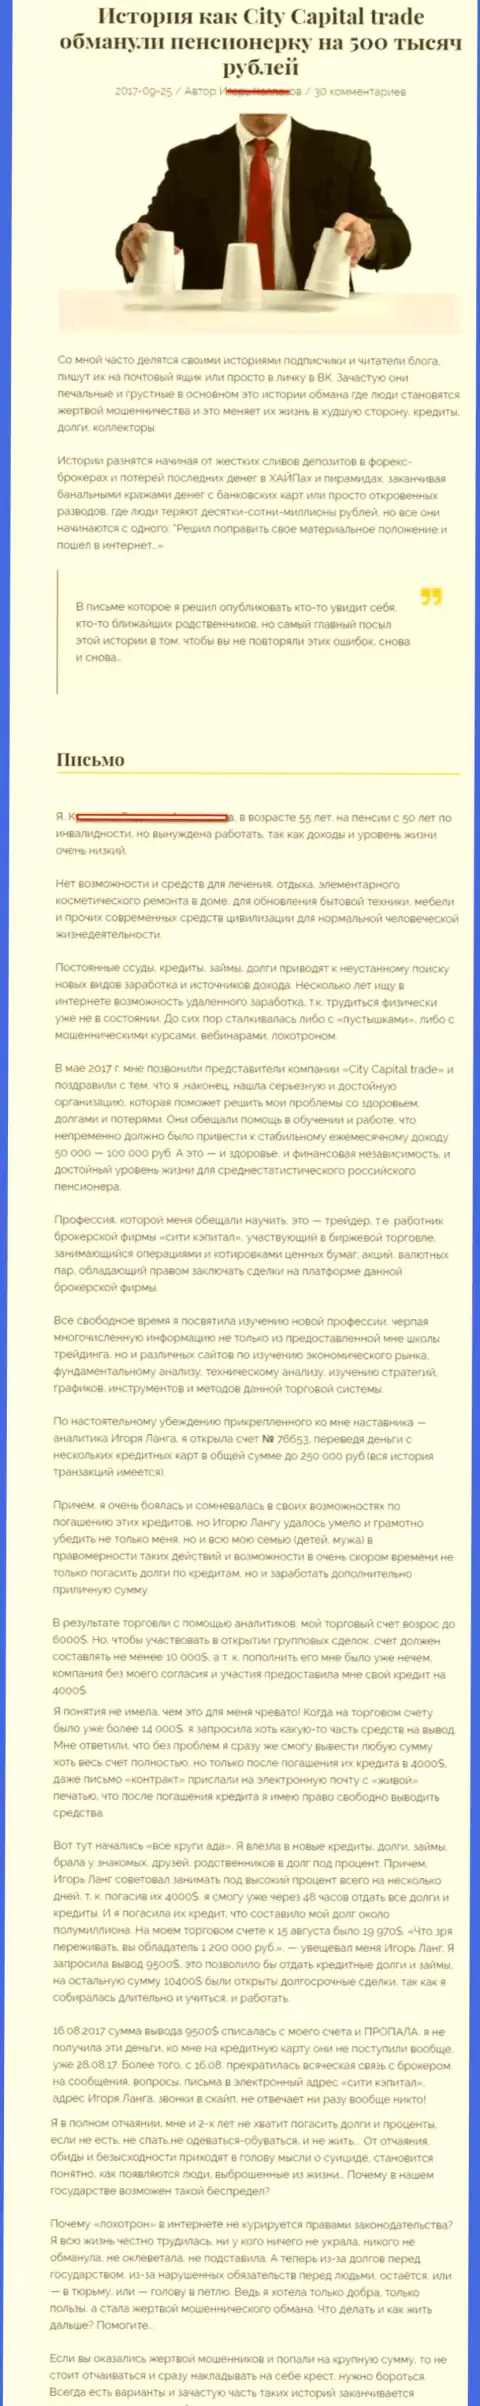 СитиКапитал Трейд кинули клиентку пенсионного возраста - инвалида на общую сумму 500 тыс. рублей - МОШЕННИКИ !!!